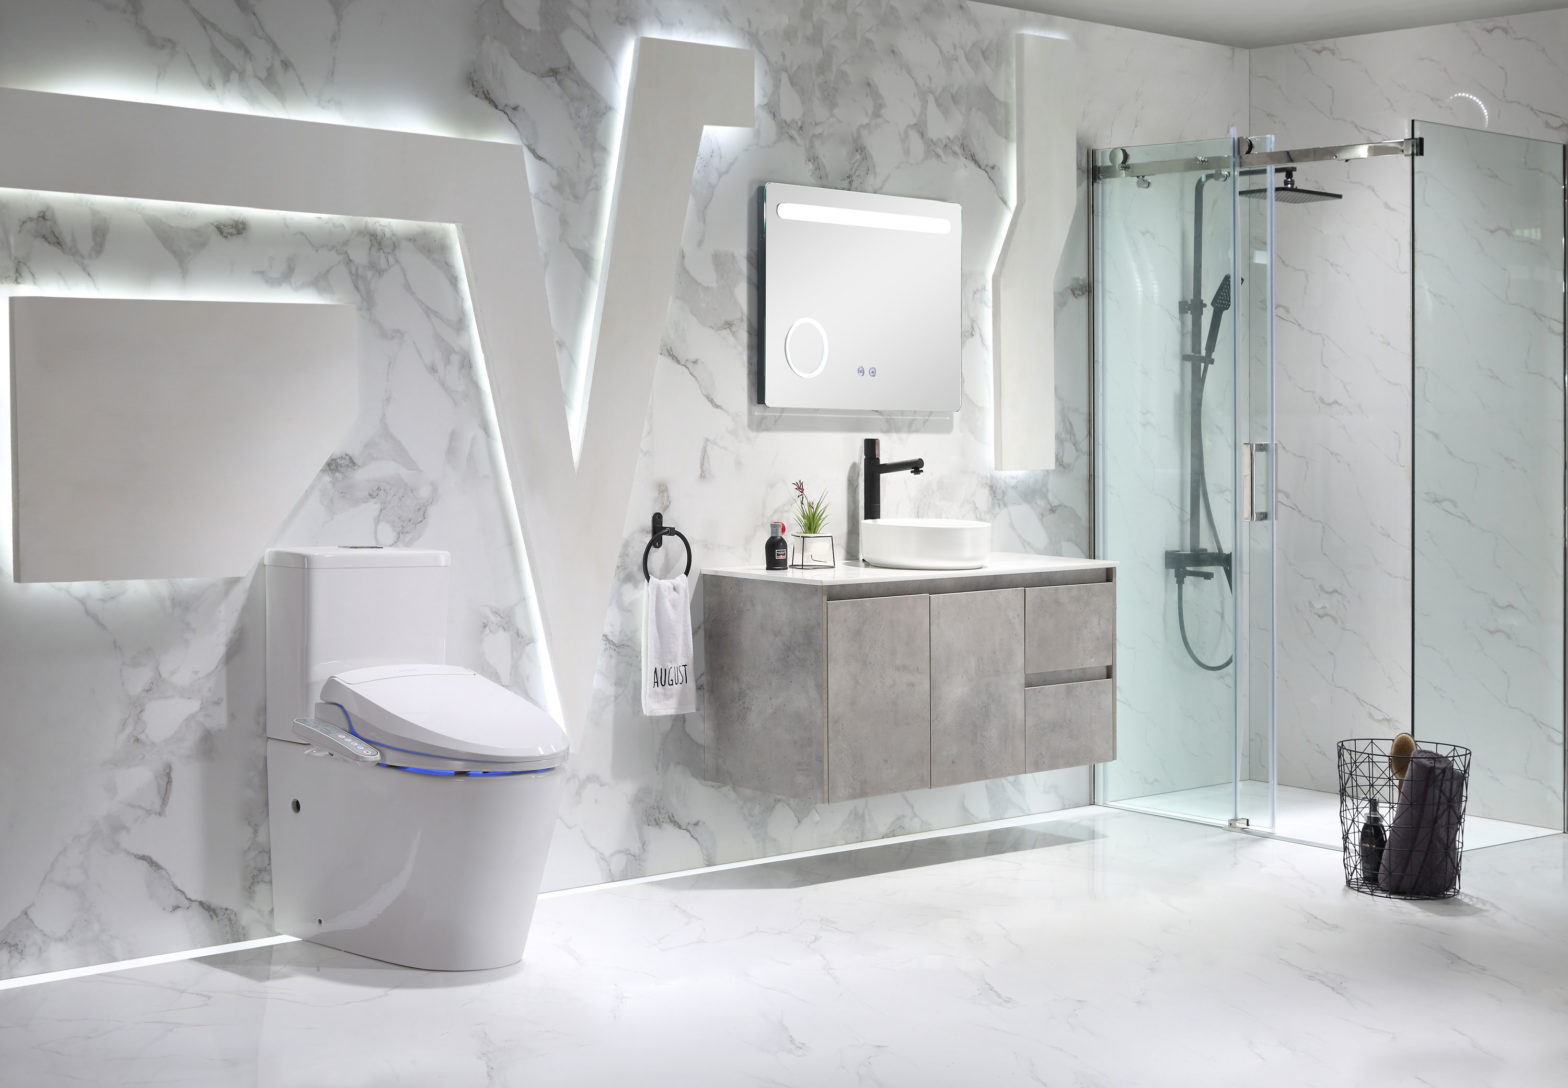 Phòng tắm công nghệ – Mở ra không gian tắm hiện đại, đẳng cấp bậc nhất